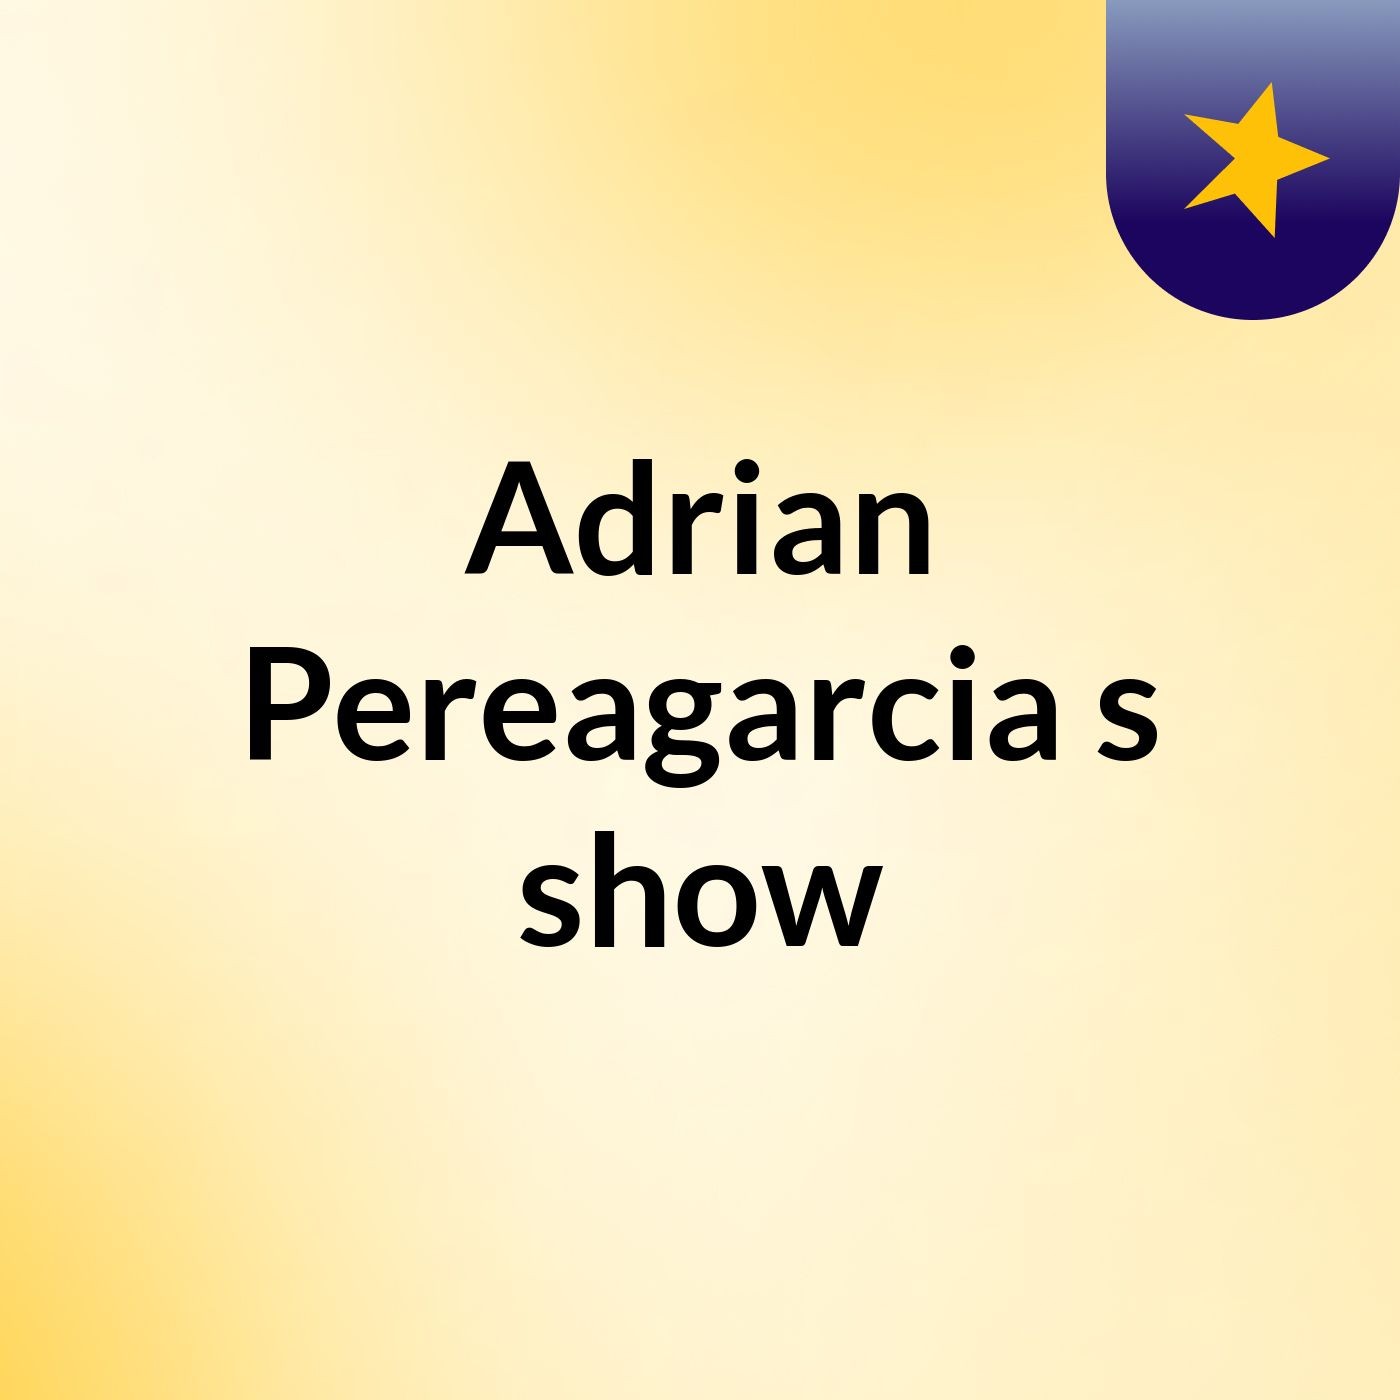 Adrian Pereagarcia's show